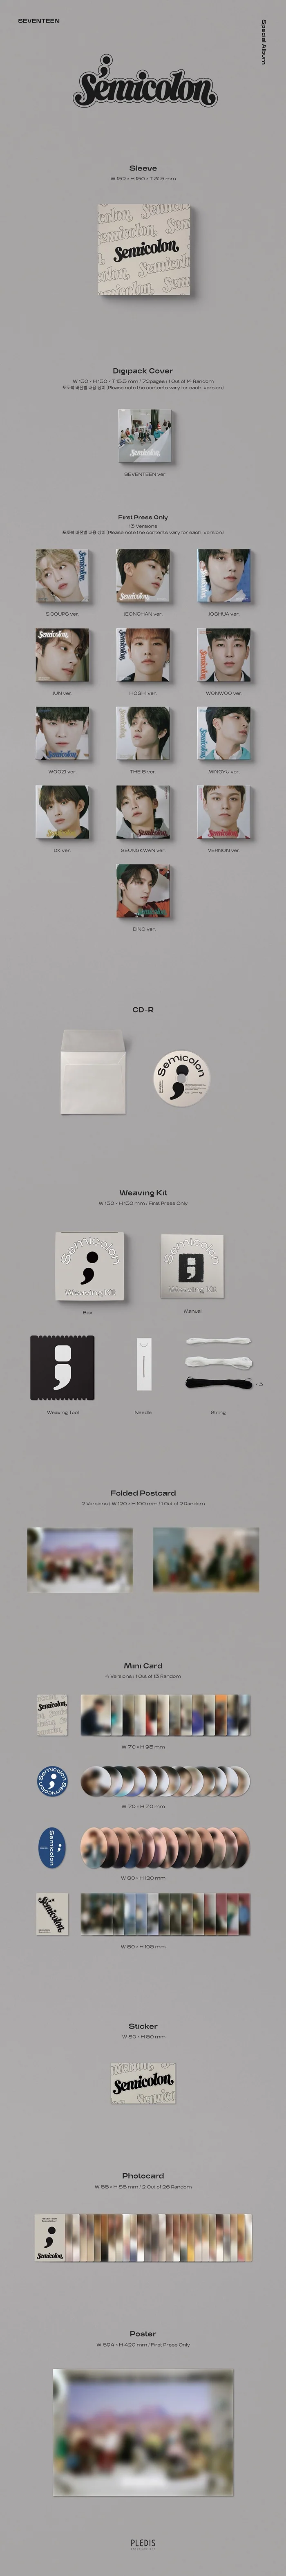 seventeen-semicolon-special-album-contents